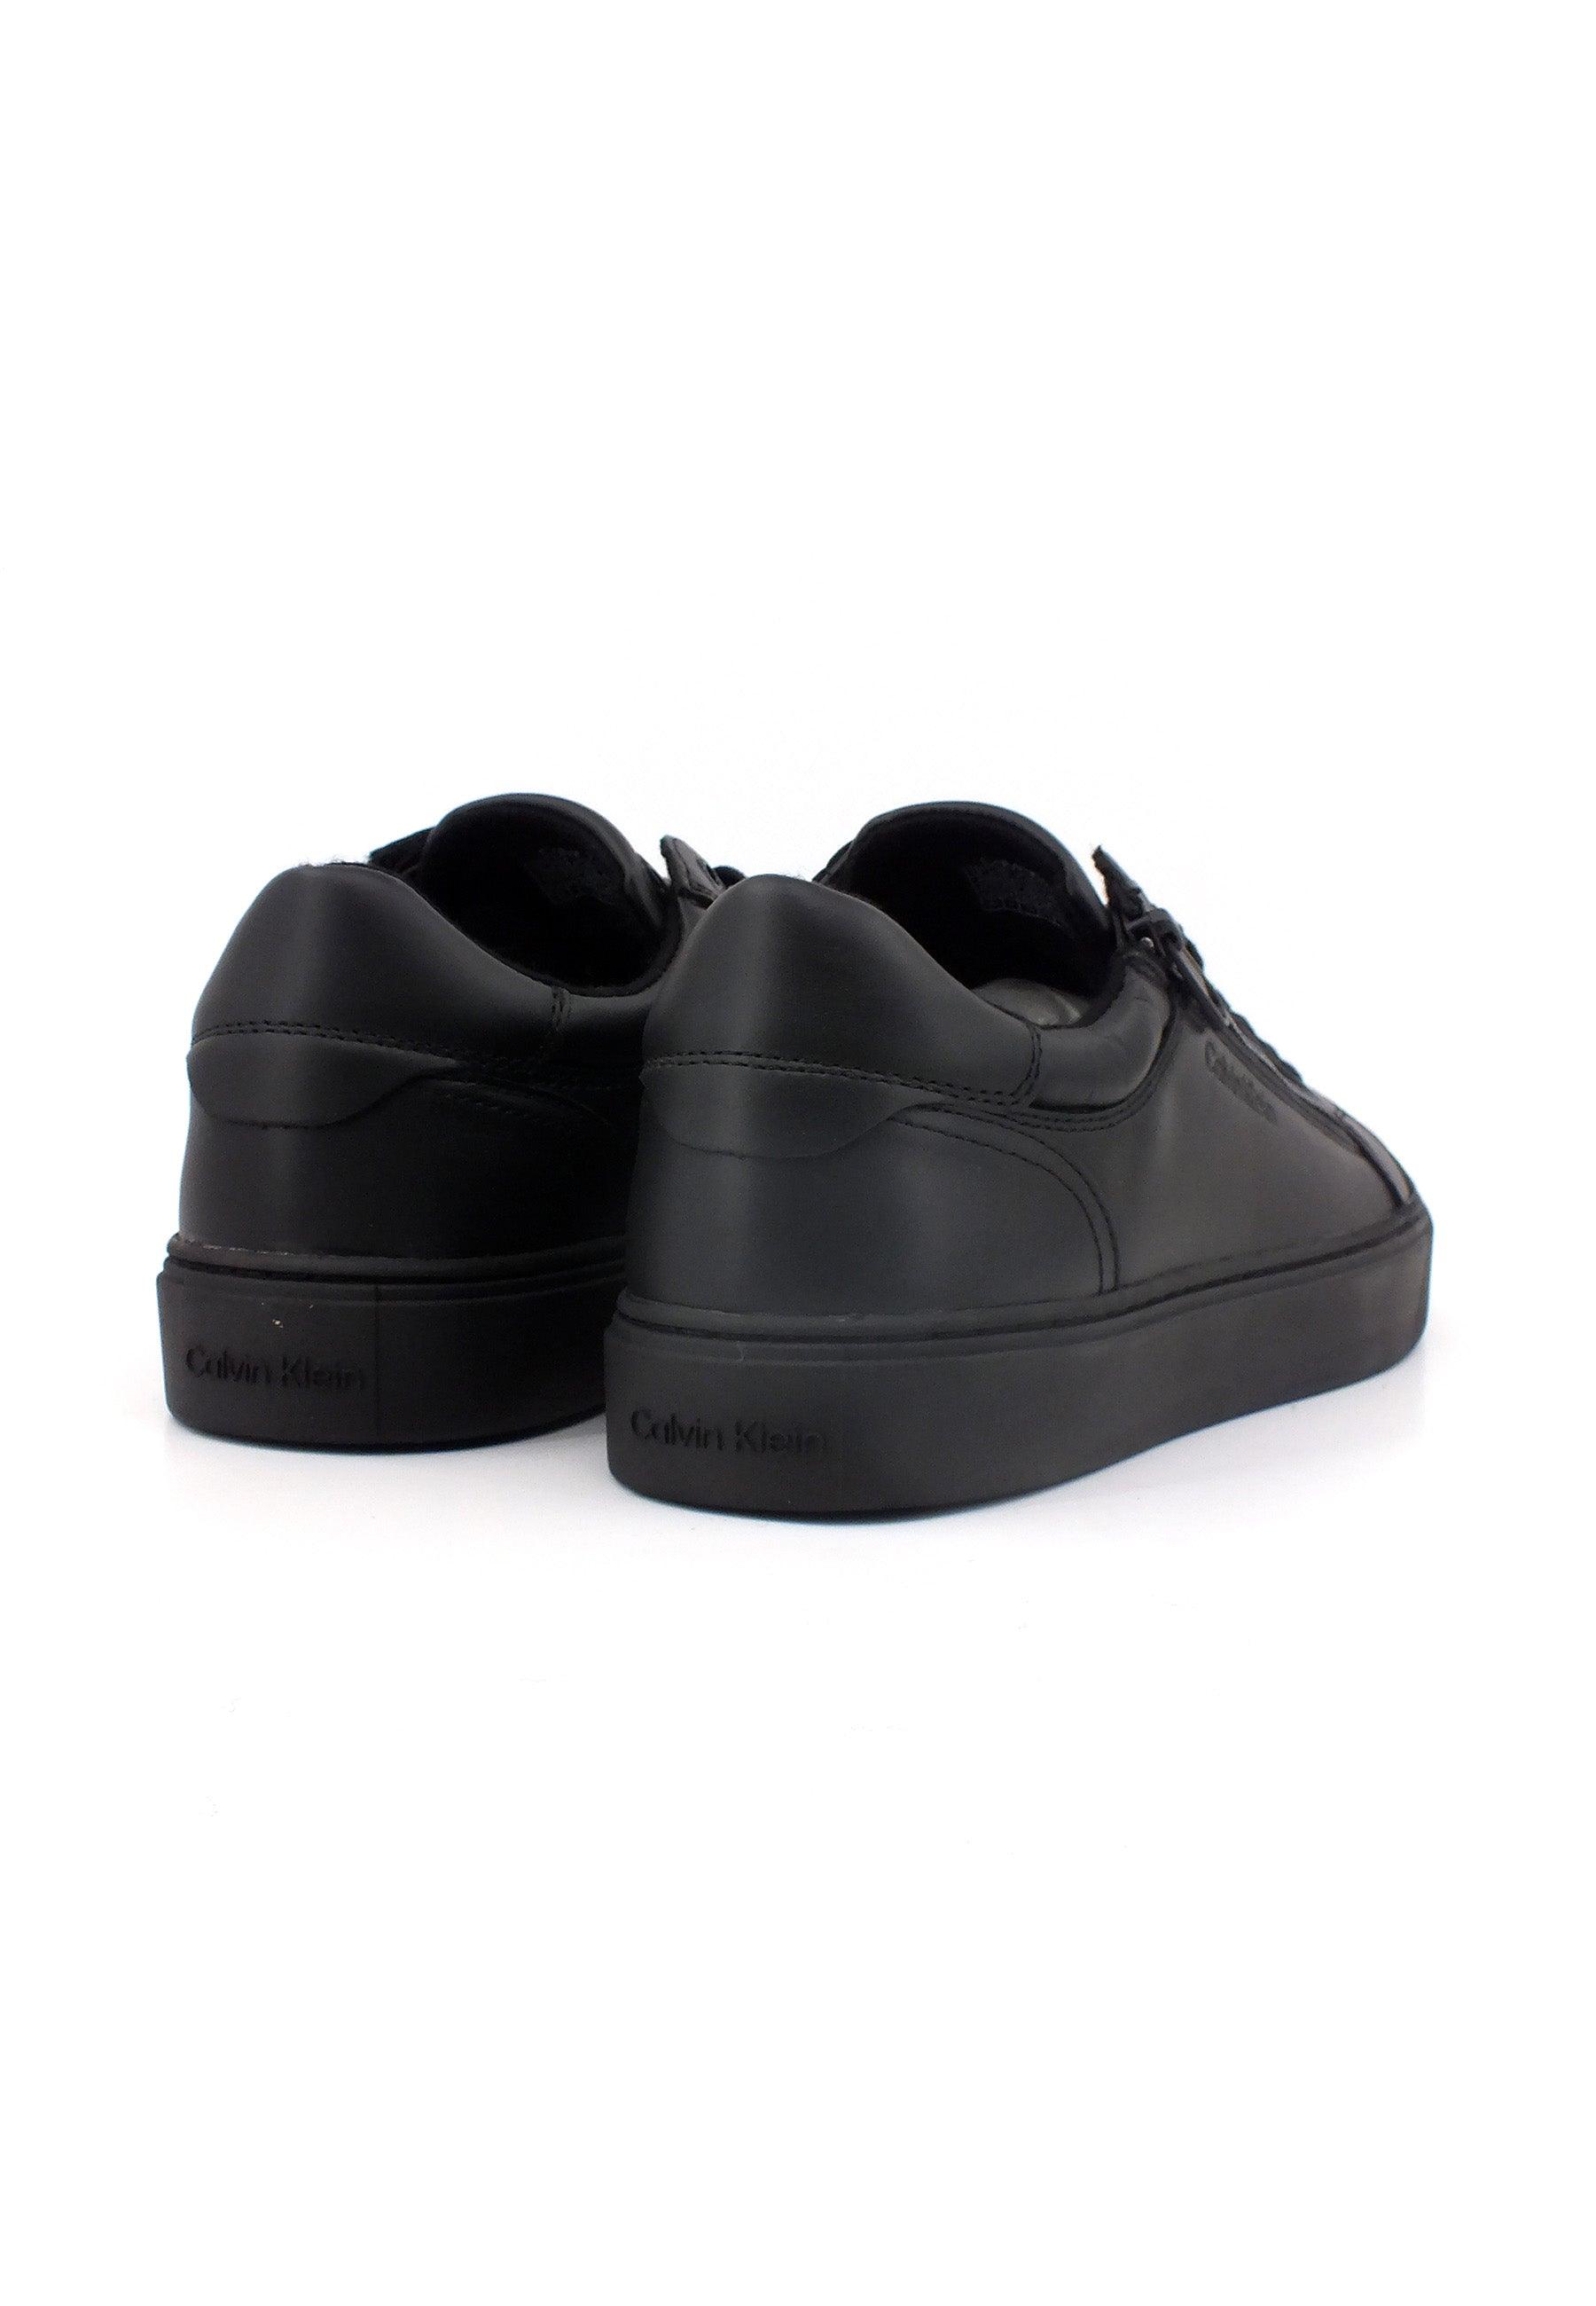 CALVIN KLEIN Sneaker Uomo Triple Black HM0HM01268 - Sandrini Calzature e Abbigliamento